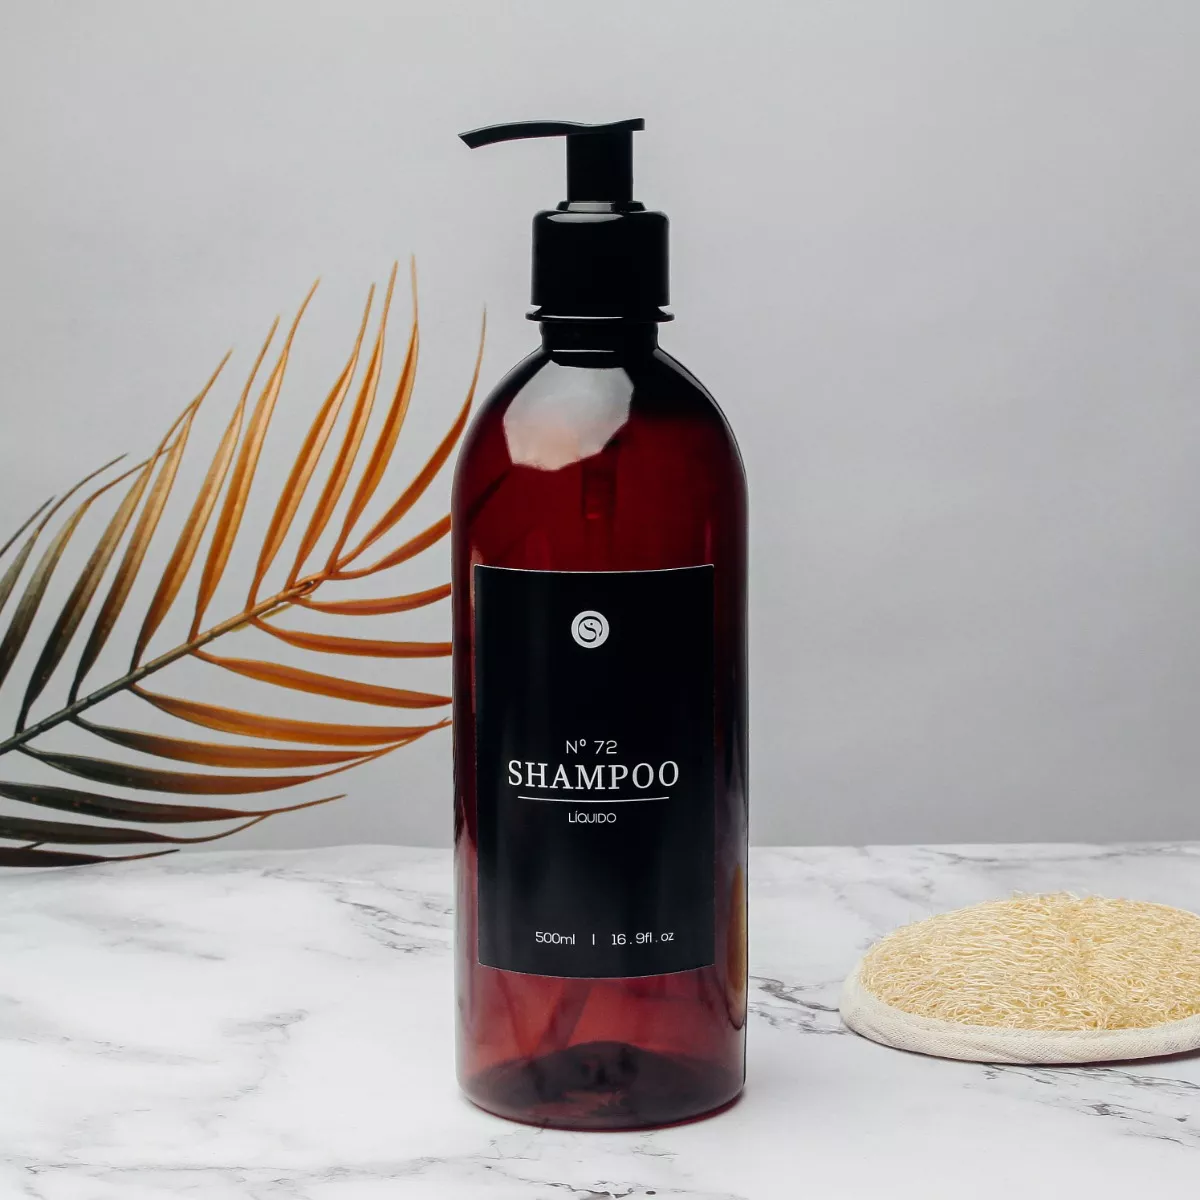 Primeira imagem para pesquisa de dispenser shampoo